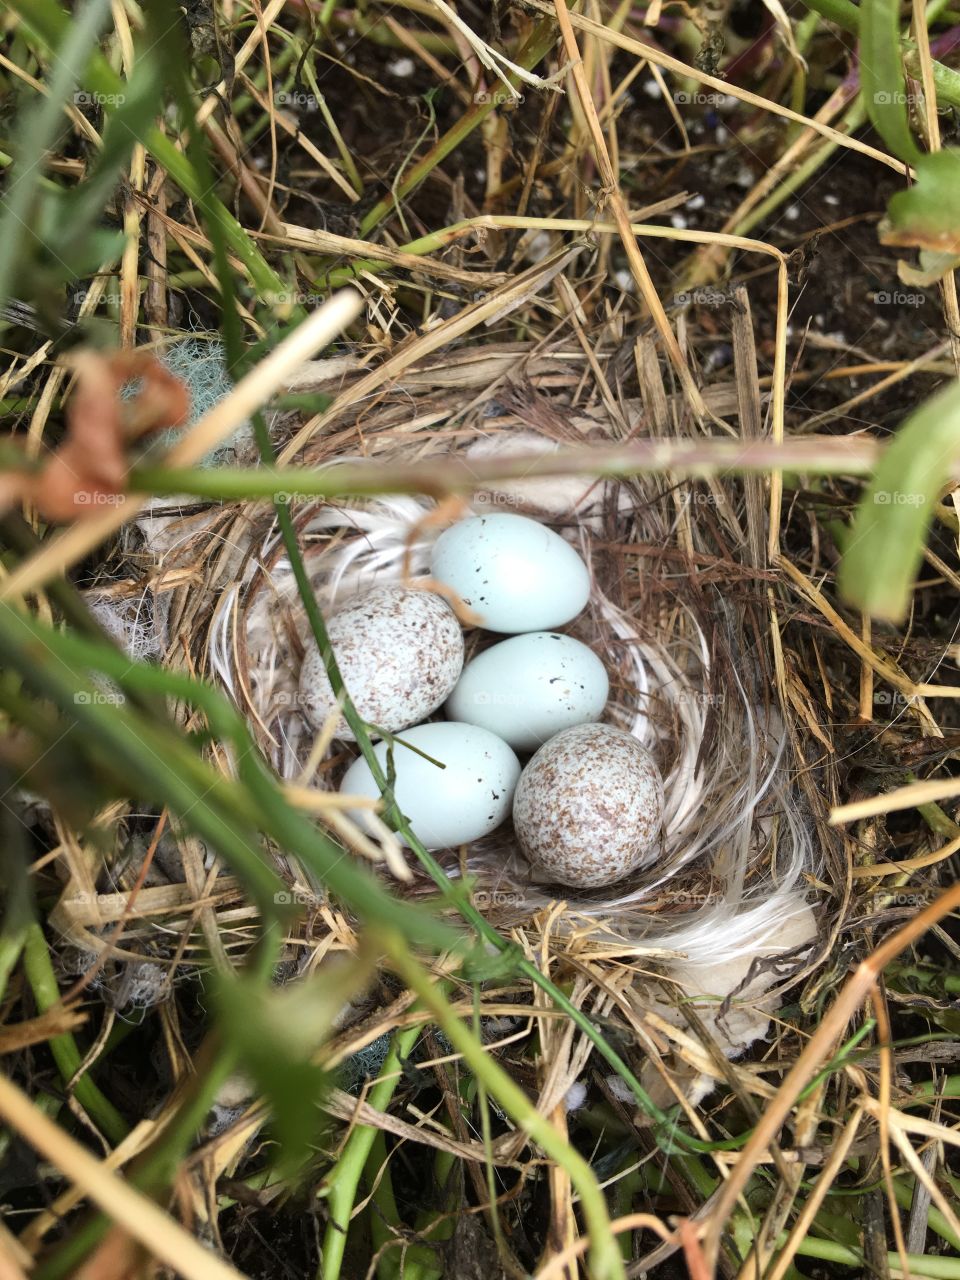 Finch eggs